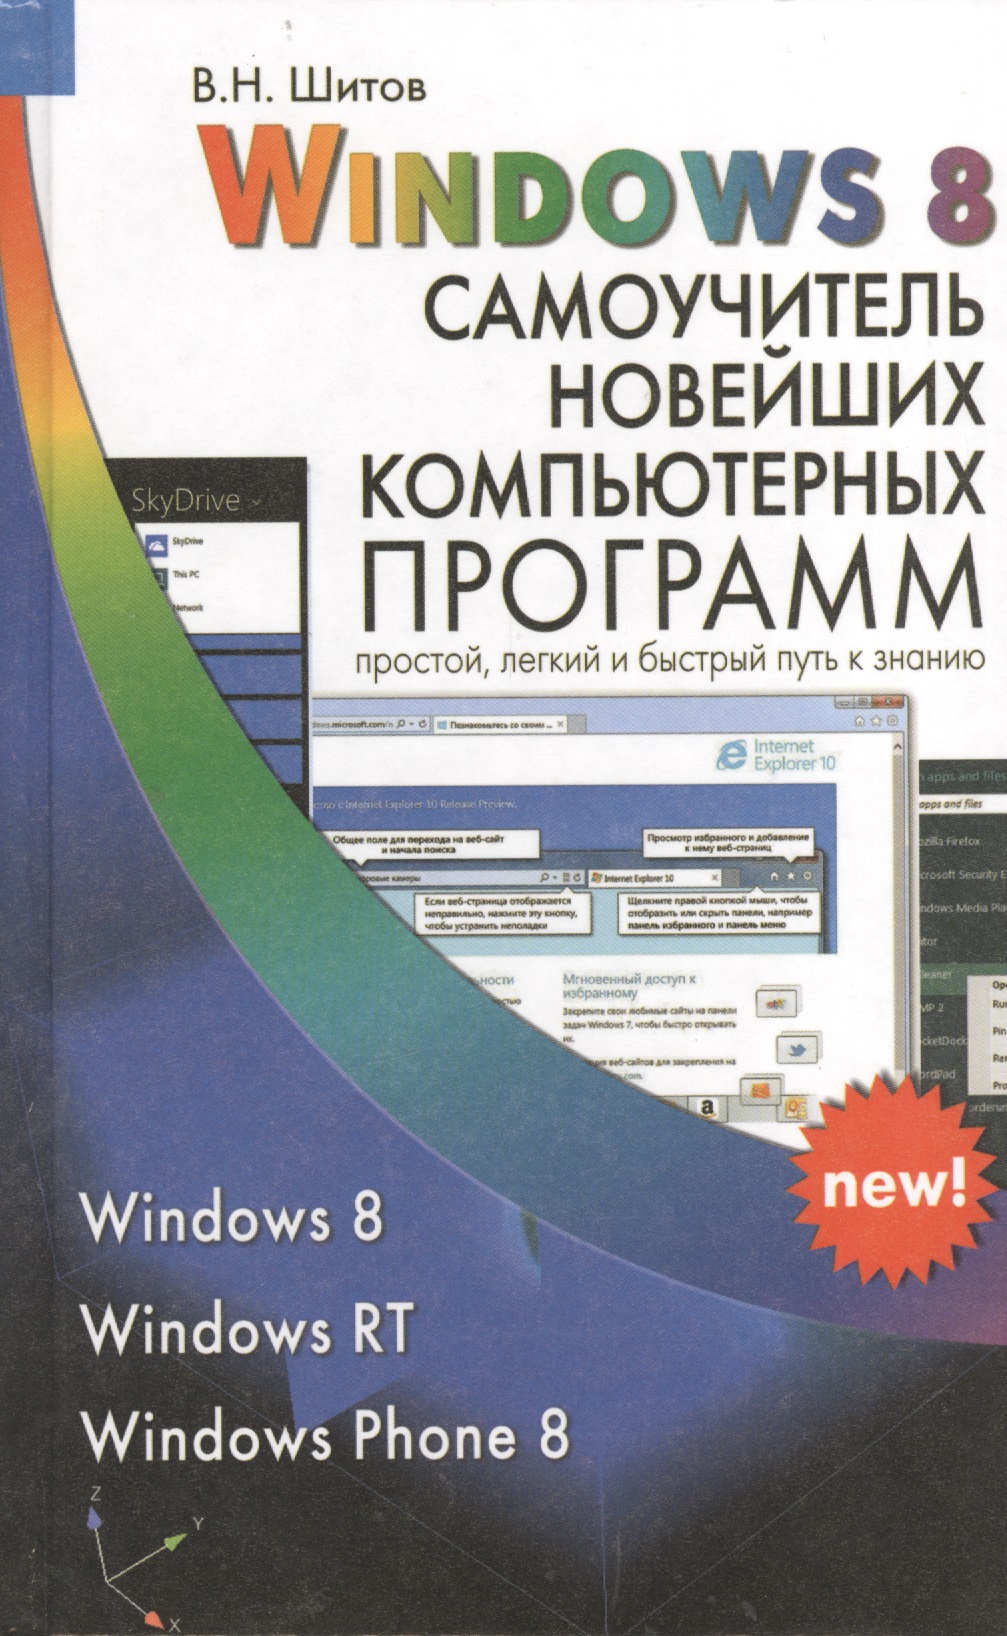 шитов виктор николаевич windows 10 самый простой и понятный самоучитель Шитов Виктор Николаевич Windows 8 Самоучитель новейших компьютерных программ (Шитов)